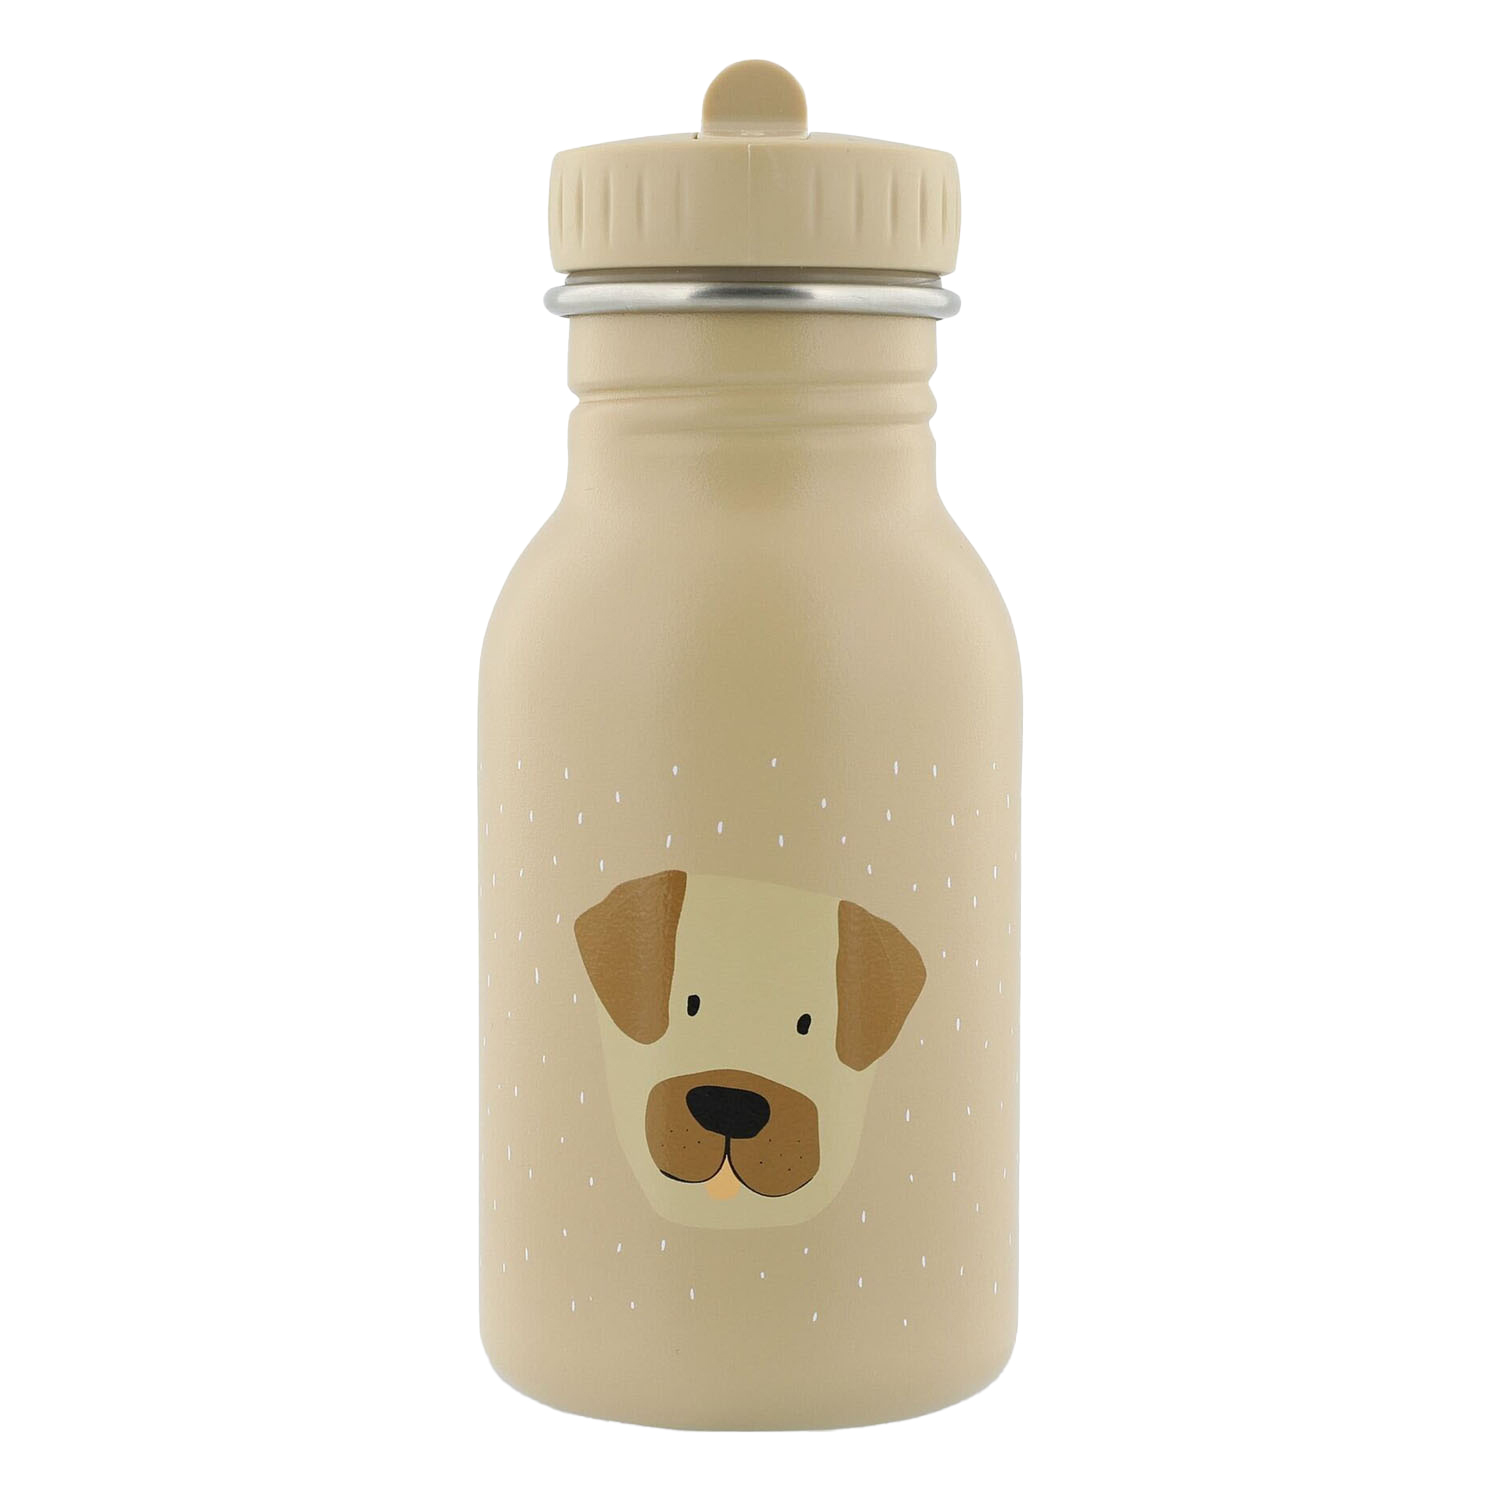 Trixie Trinkflasche - Mr. Hund, 350 ml